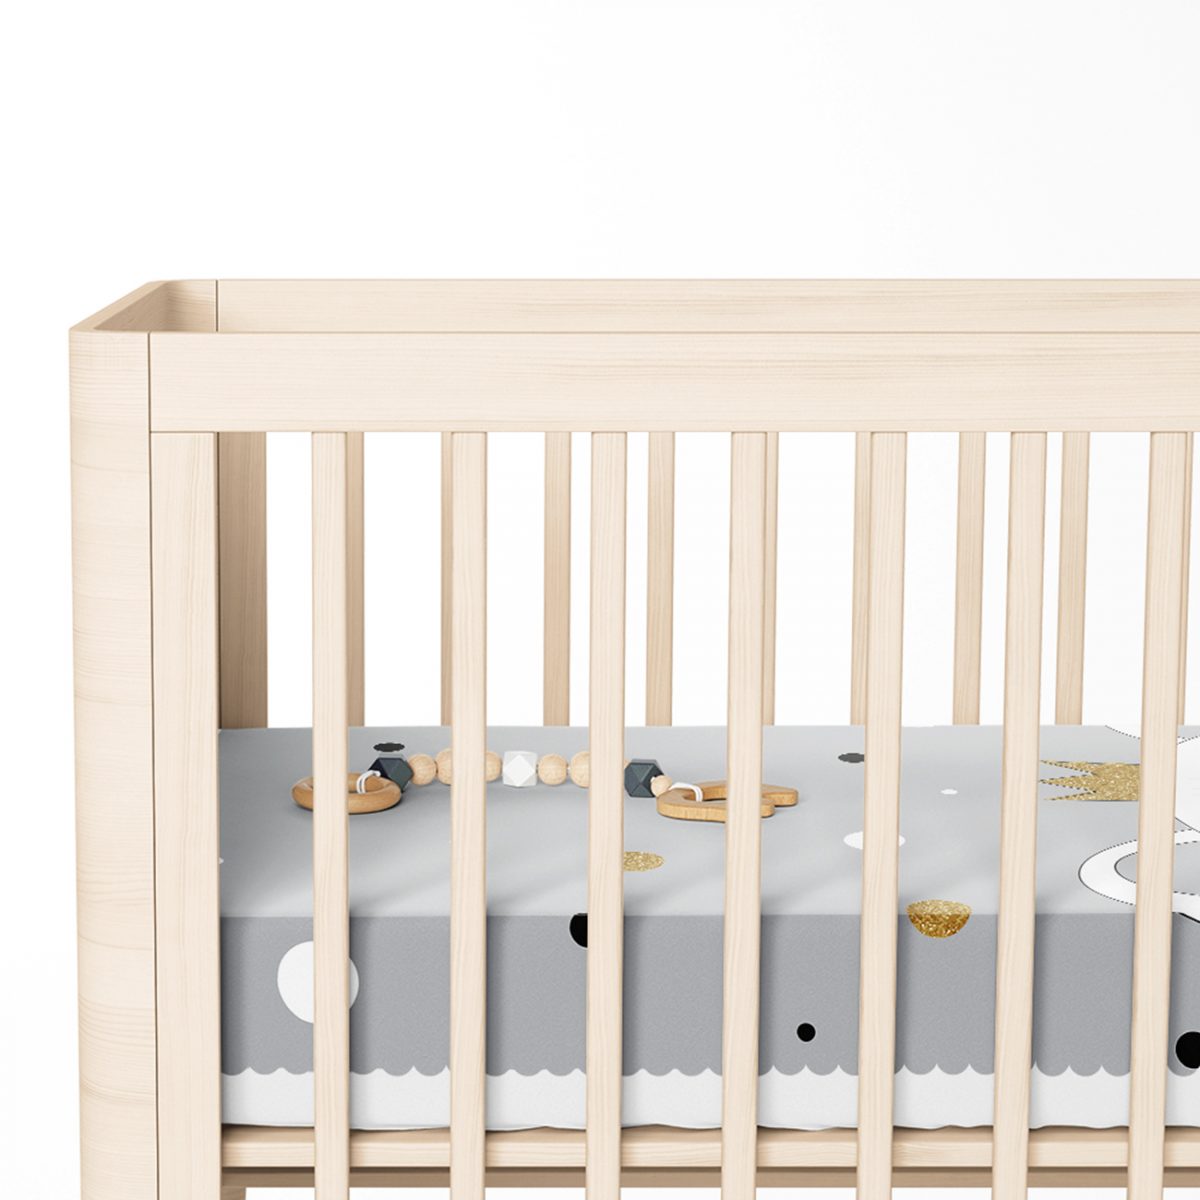 Renkli Puanlı Kedicik Desenli Bebek Odası Yatak Örtüsü Realhomes